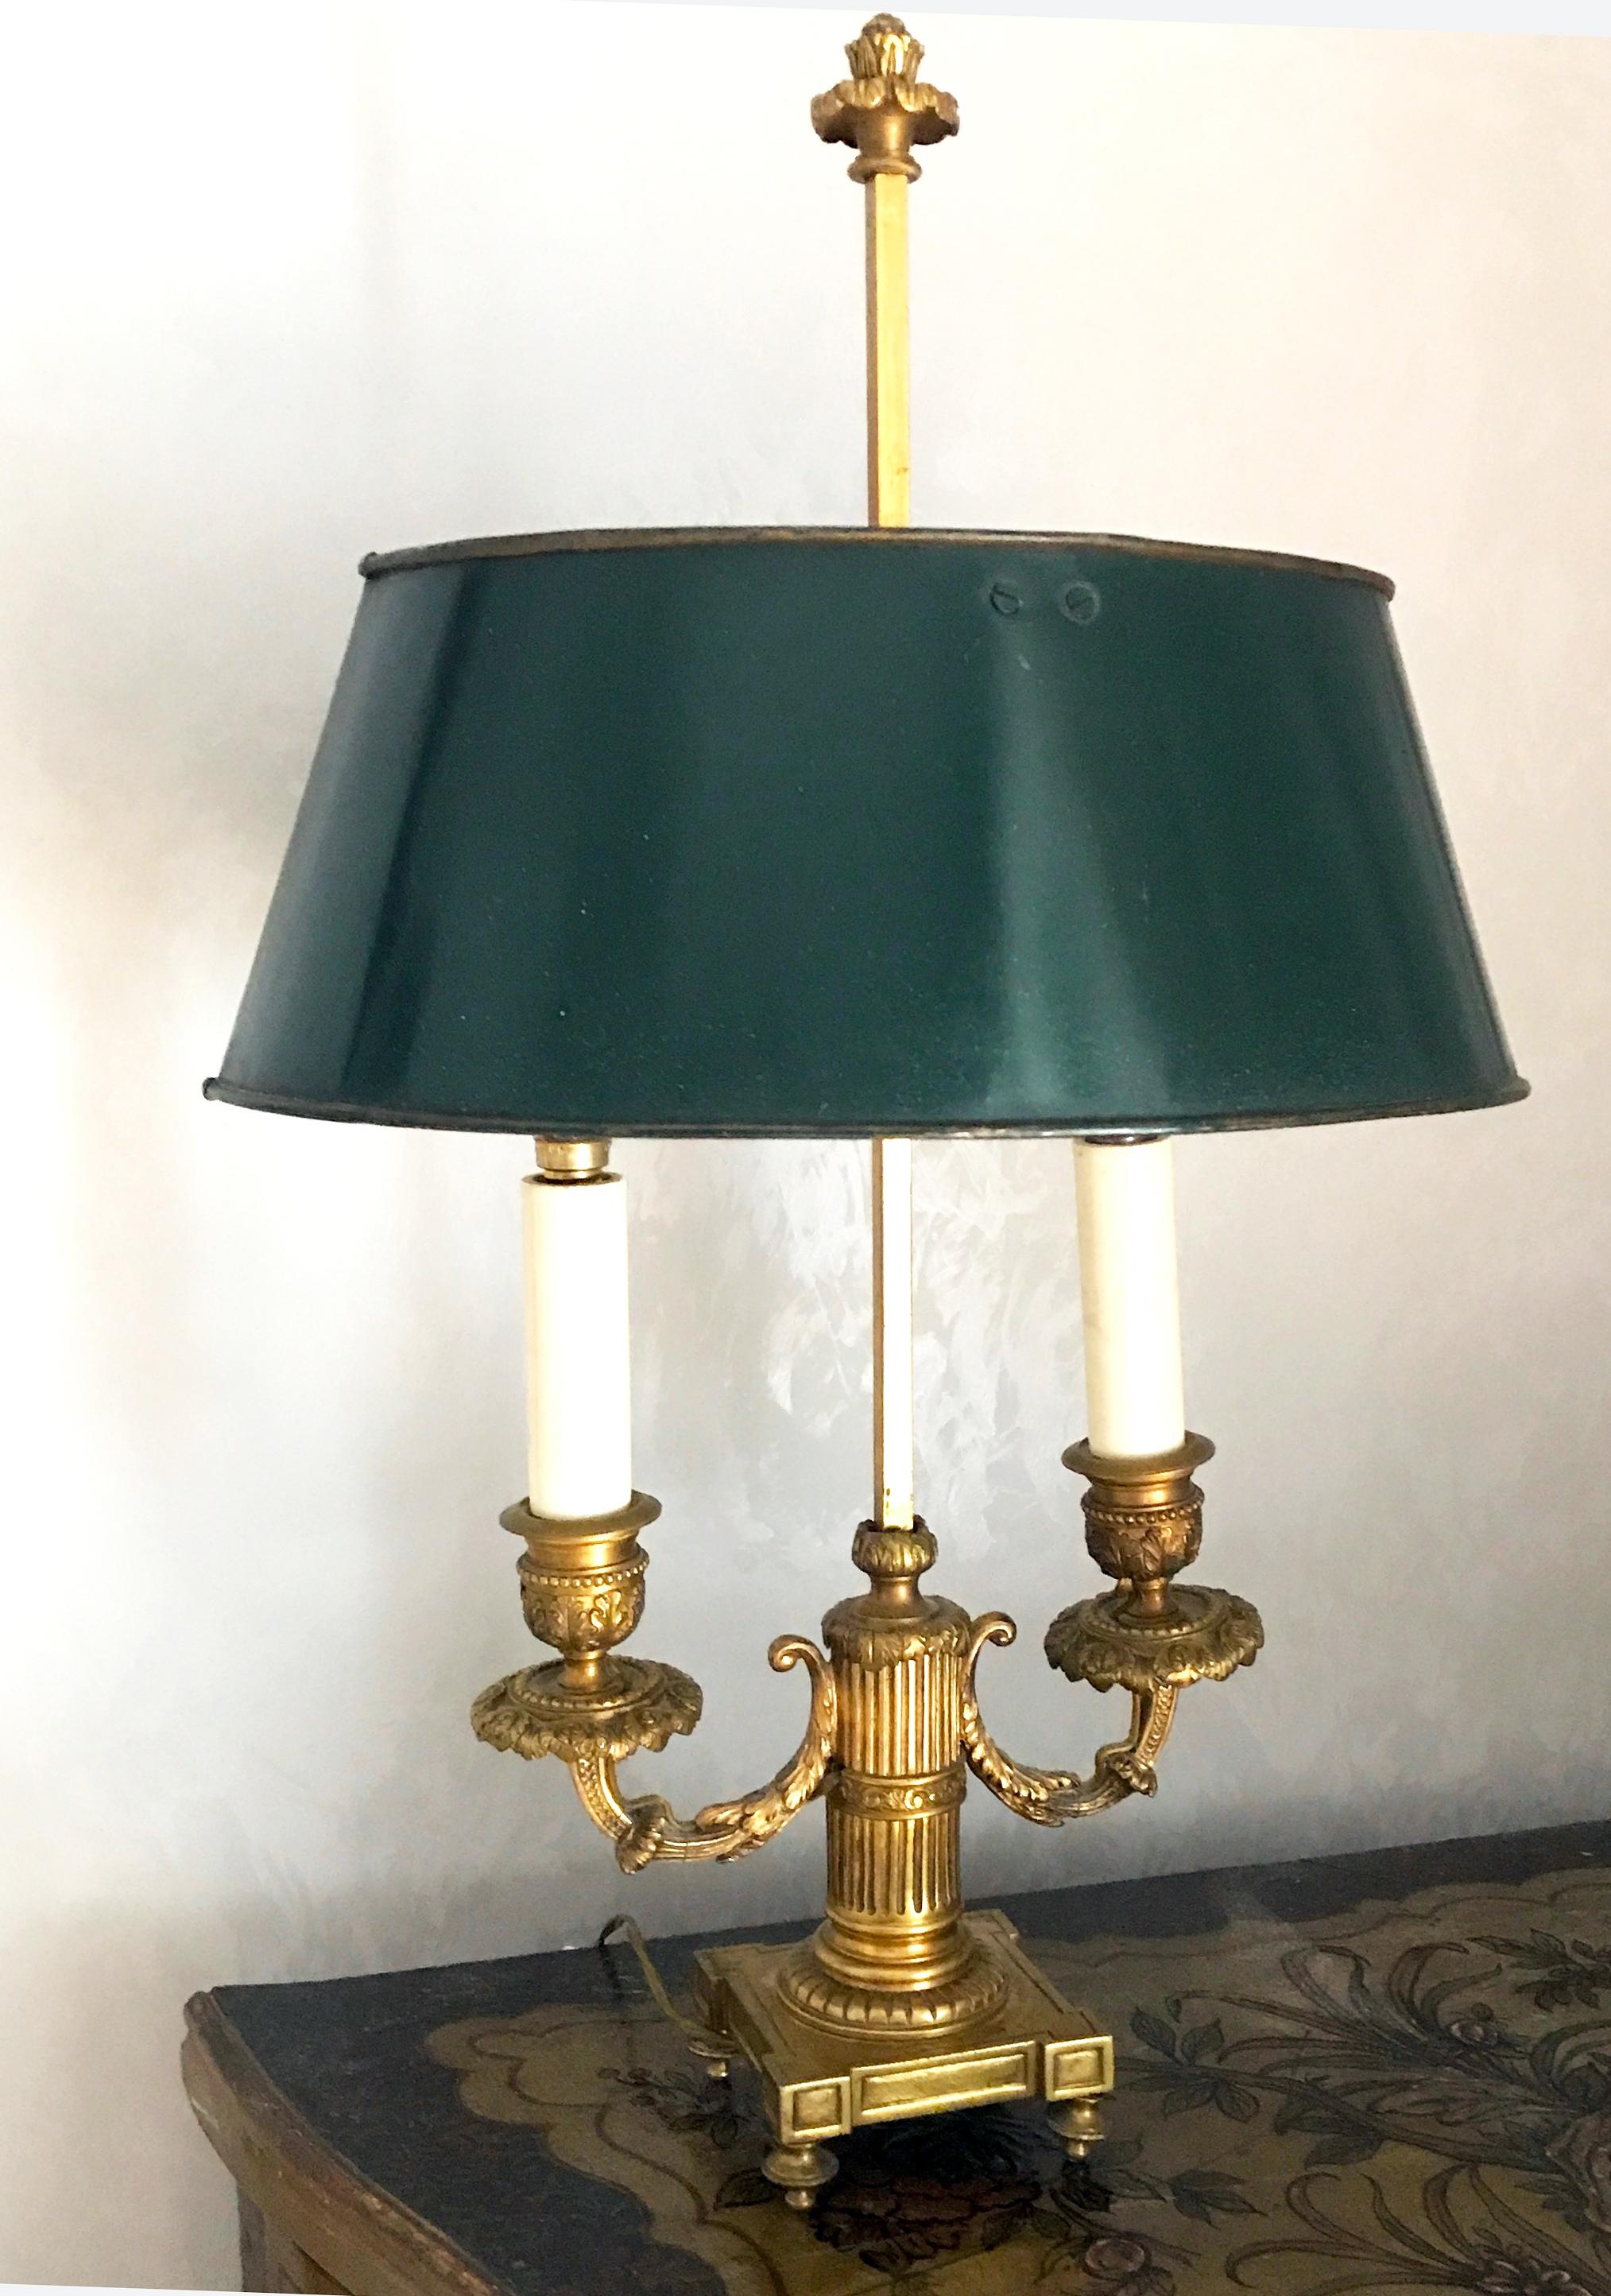 Elegantes lampes Bouillotte Empire en bronze doré finement ciselé avec abat-jour ajustable en tole peint en vert foncé.
Deux ampoules E 14.
Nous pouvons livrer des câbles aux normes américaines.

 